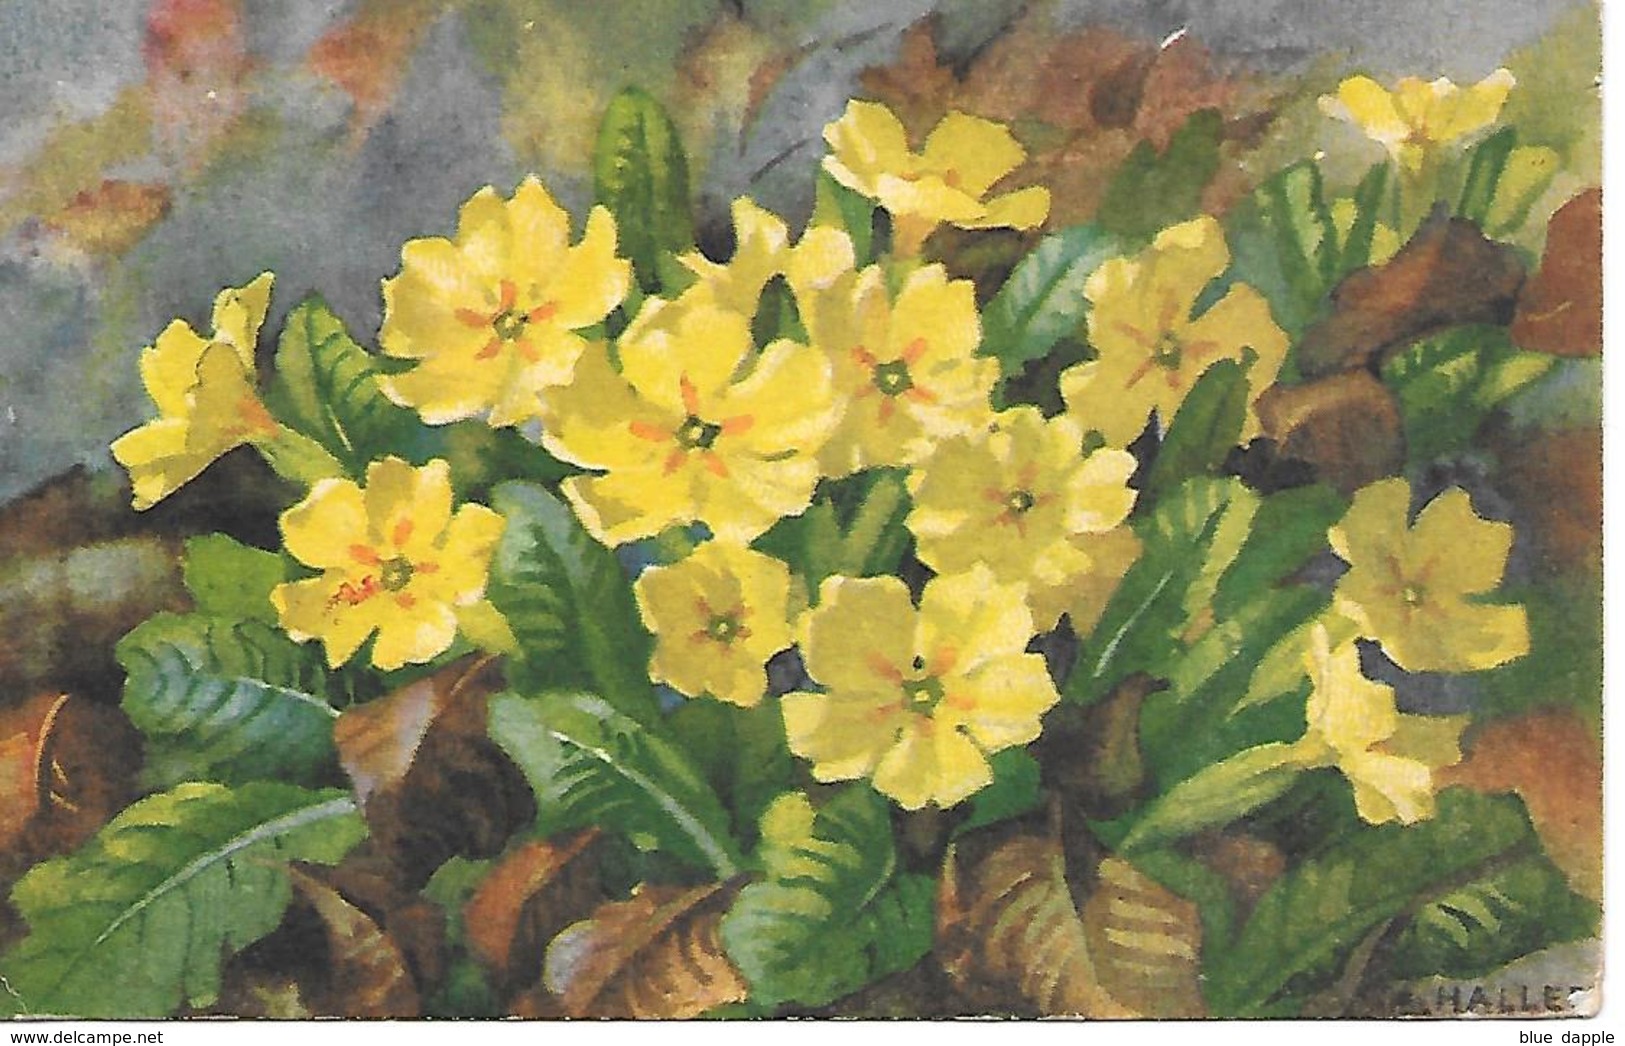 Illustrator - A. Haller -  Blumen, Flowers, Des Fleurs, Floreale - Haller, A.